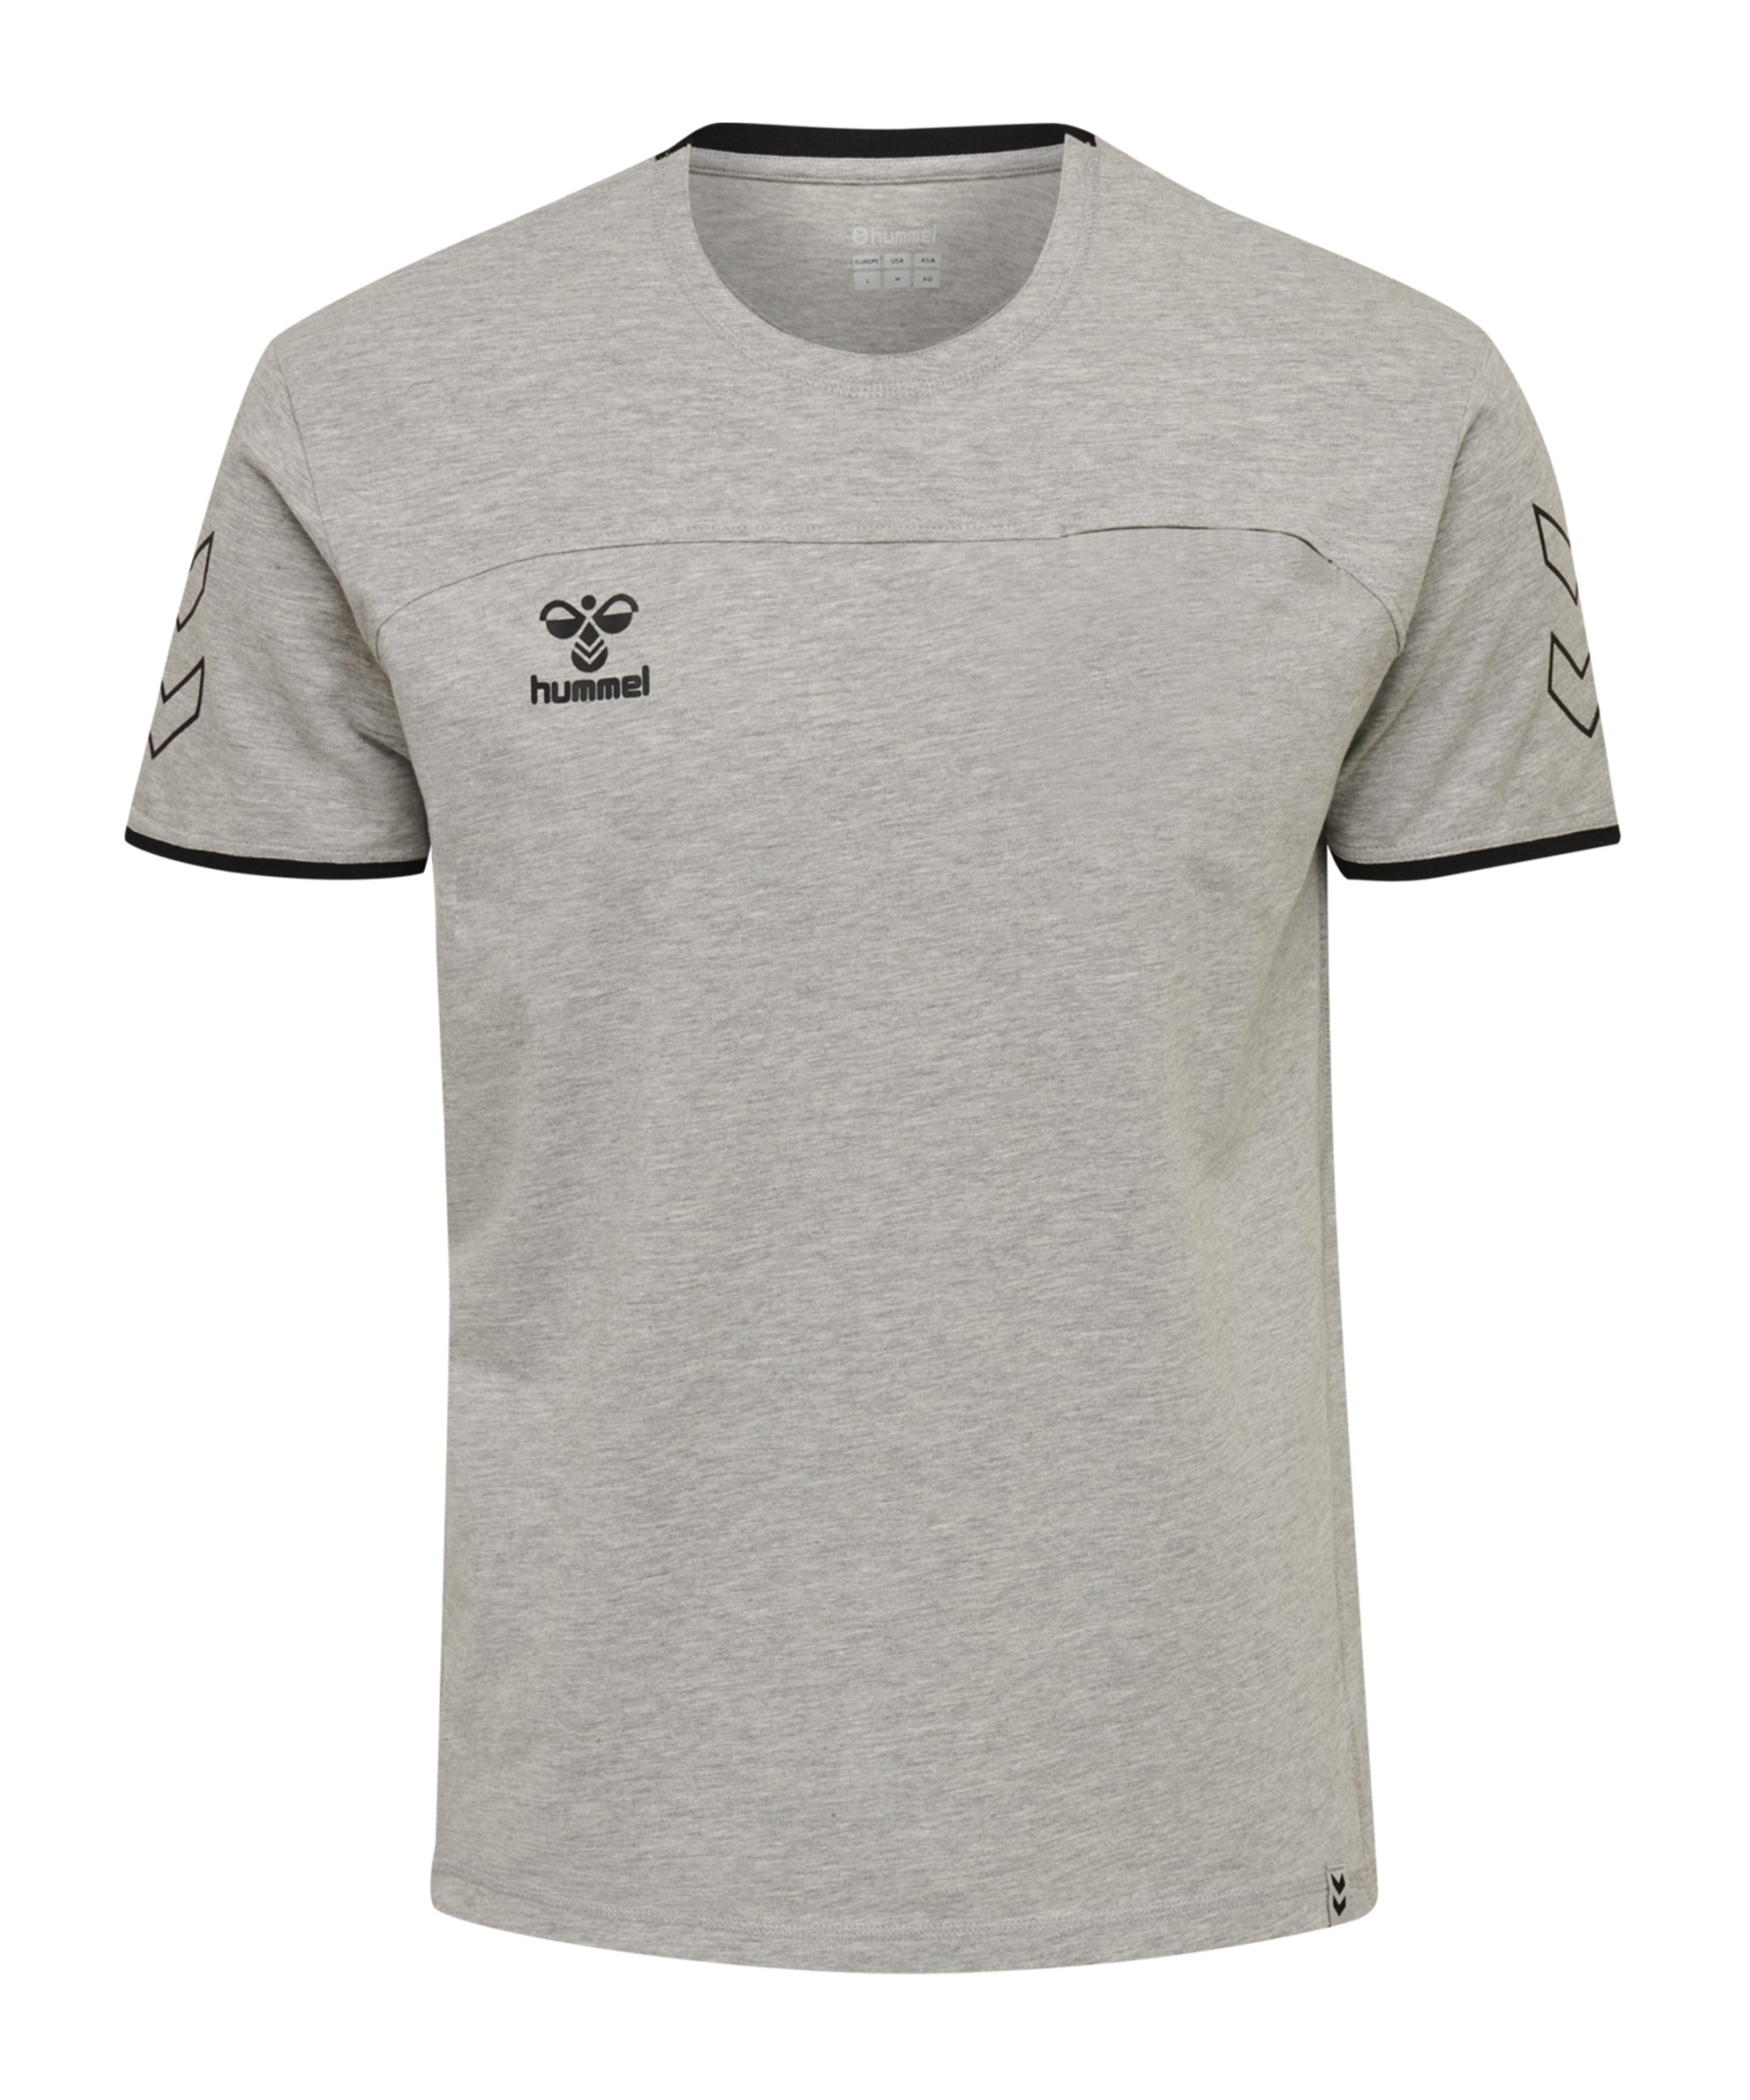 Hummel Cima T-Shirt Grau F2006 - grau